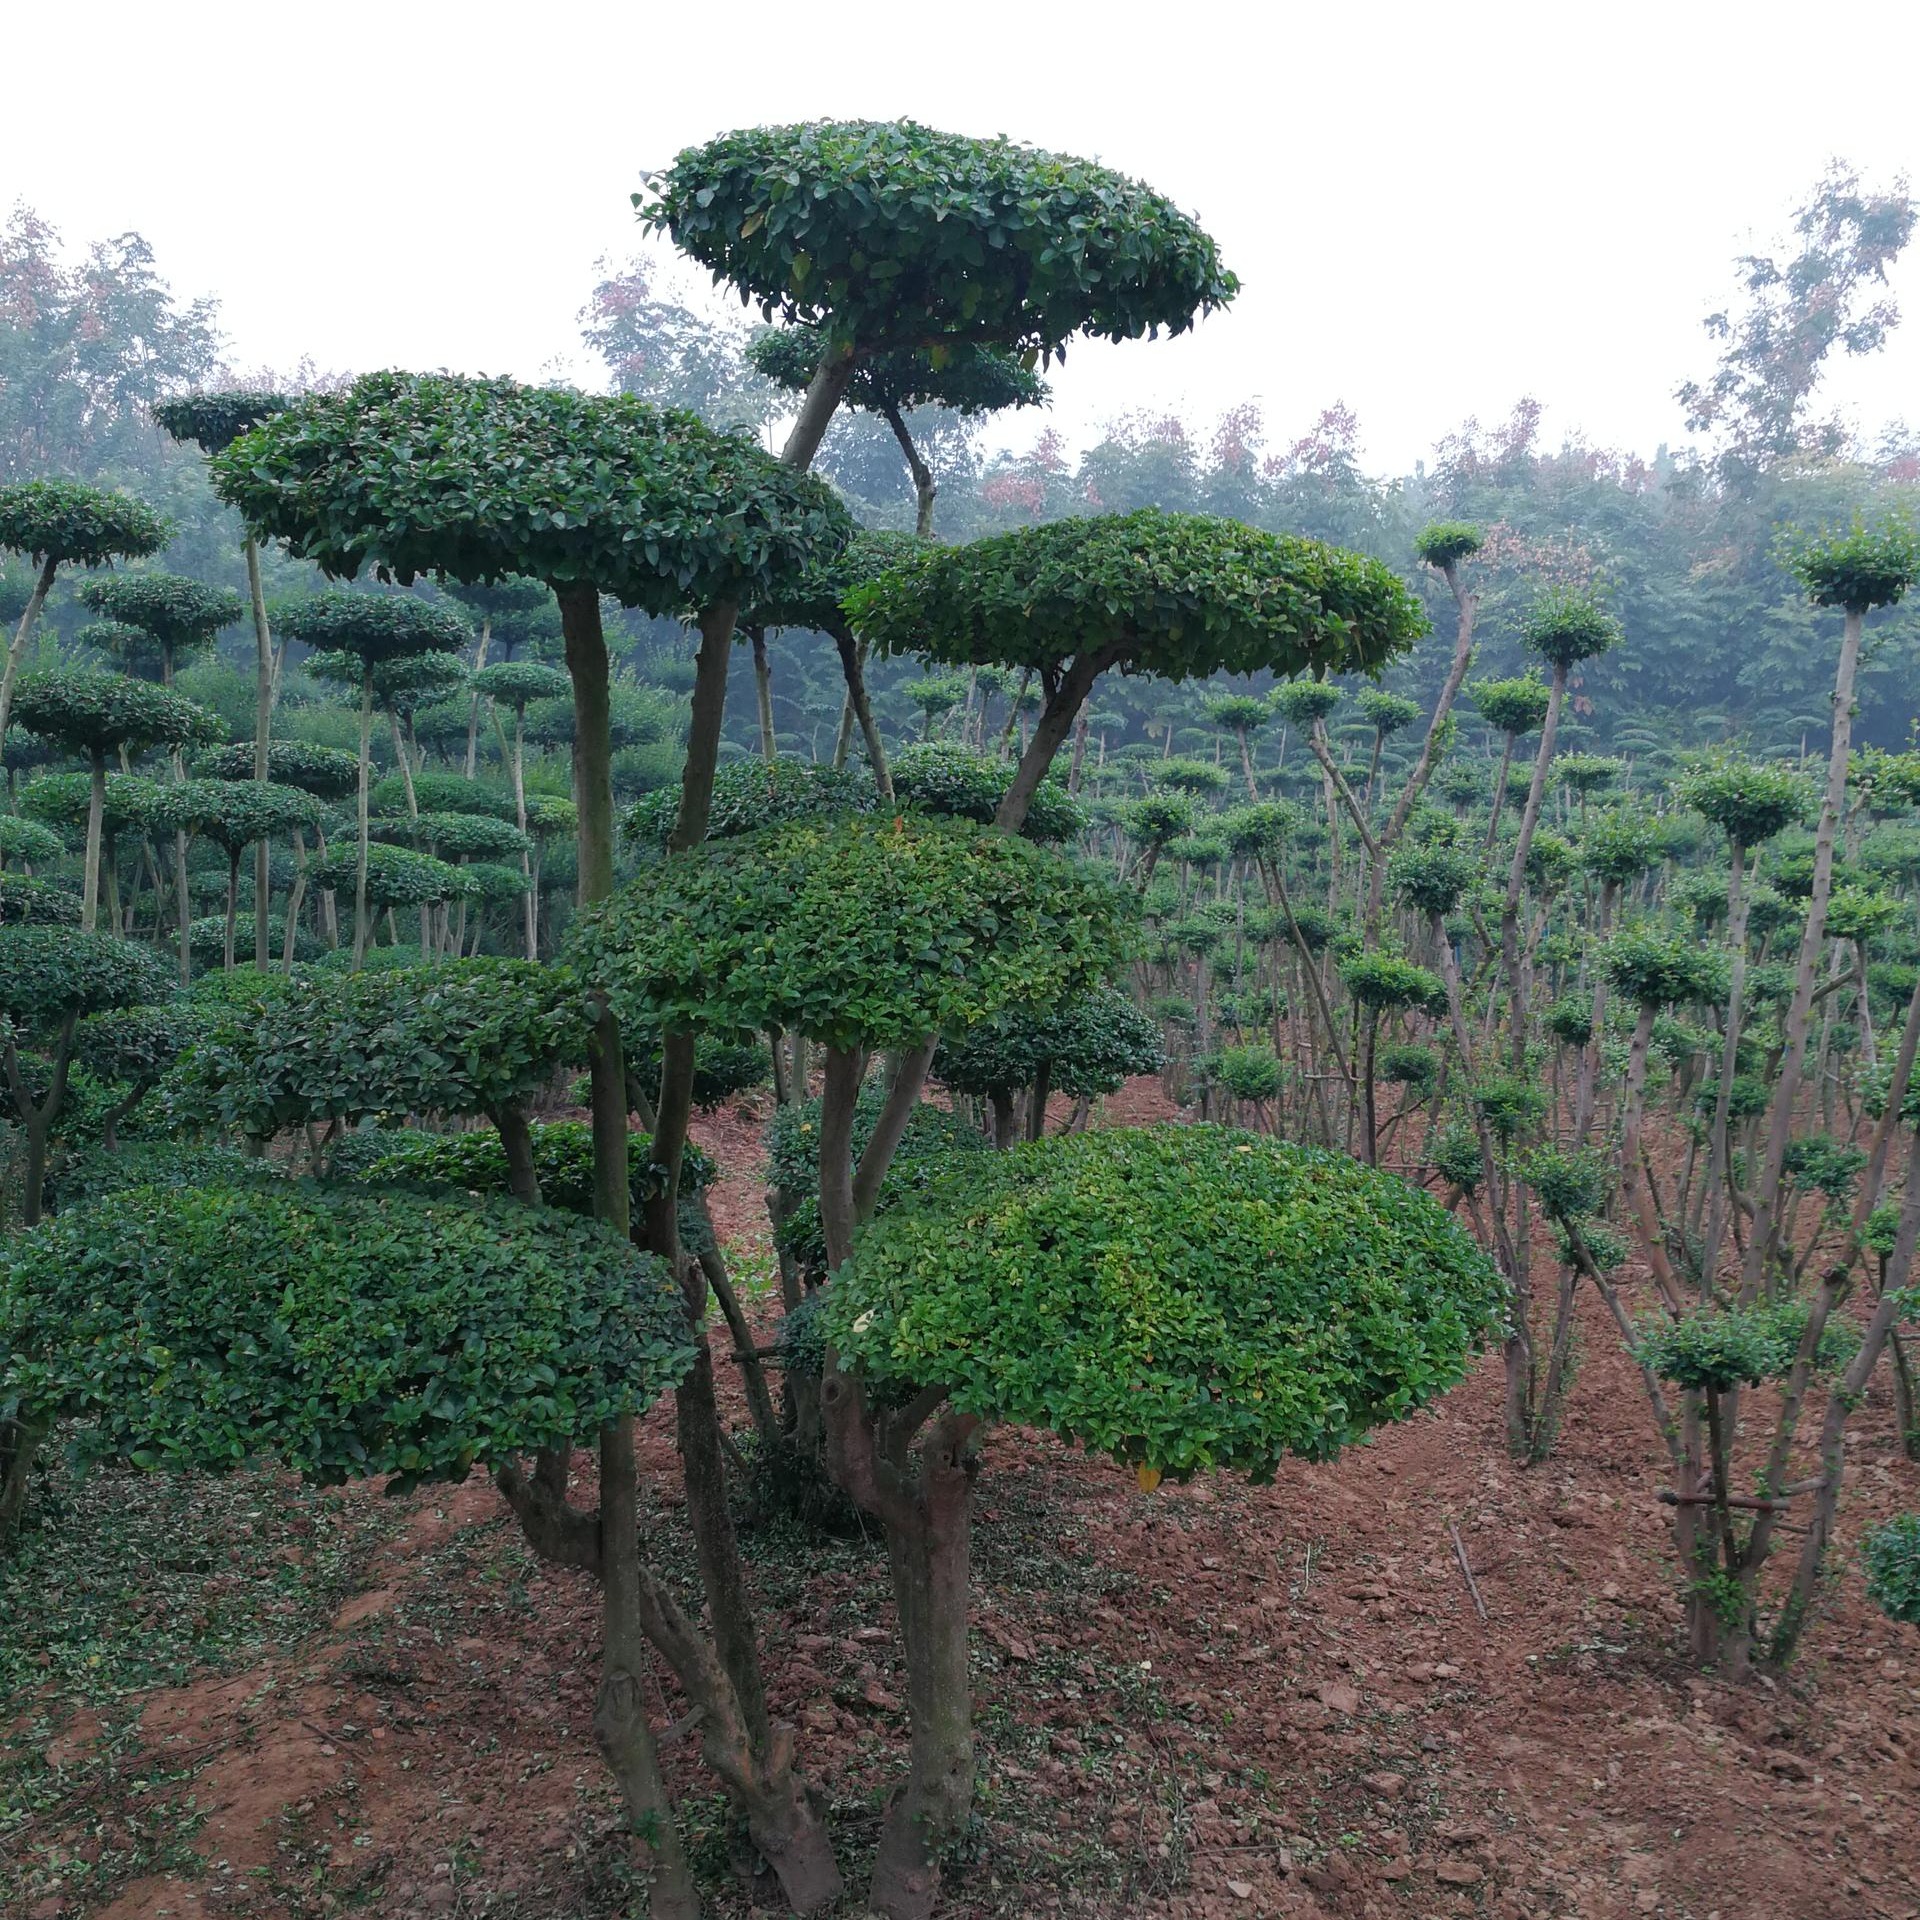 鄢陵县梦宇花木园种植小叶女贞造型树是非常吉祥的植物